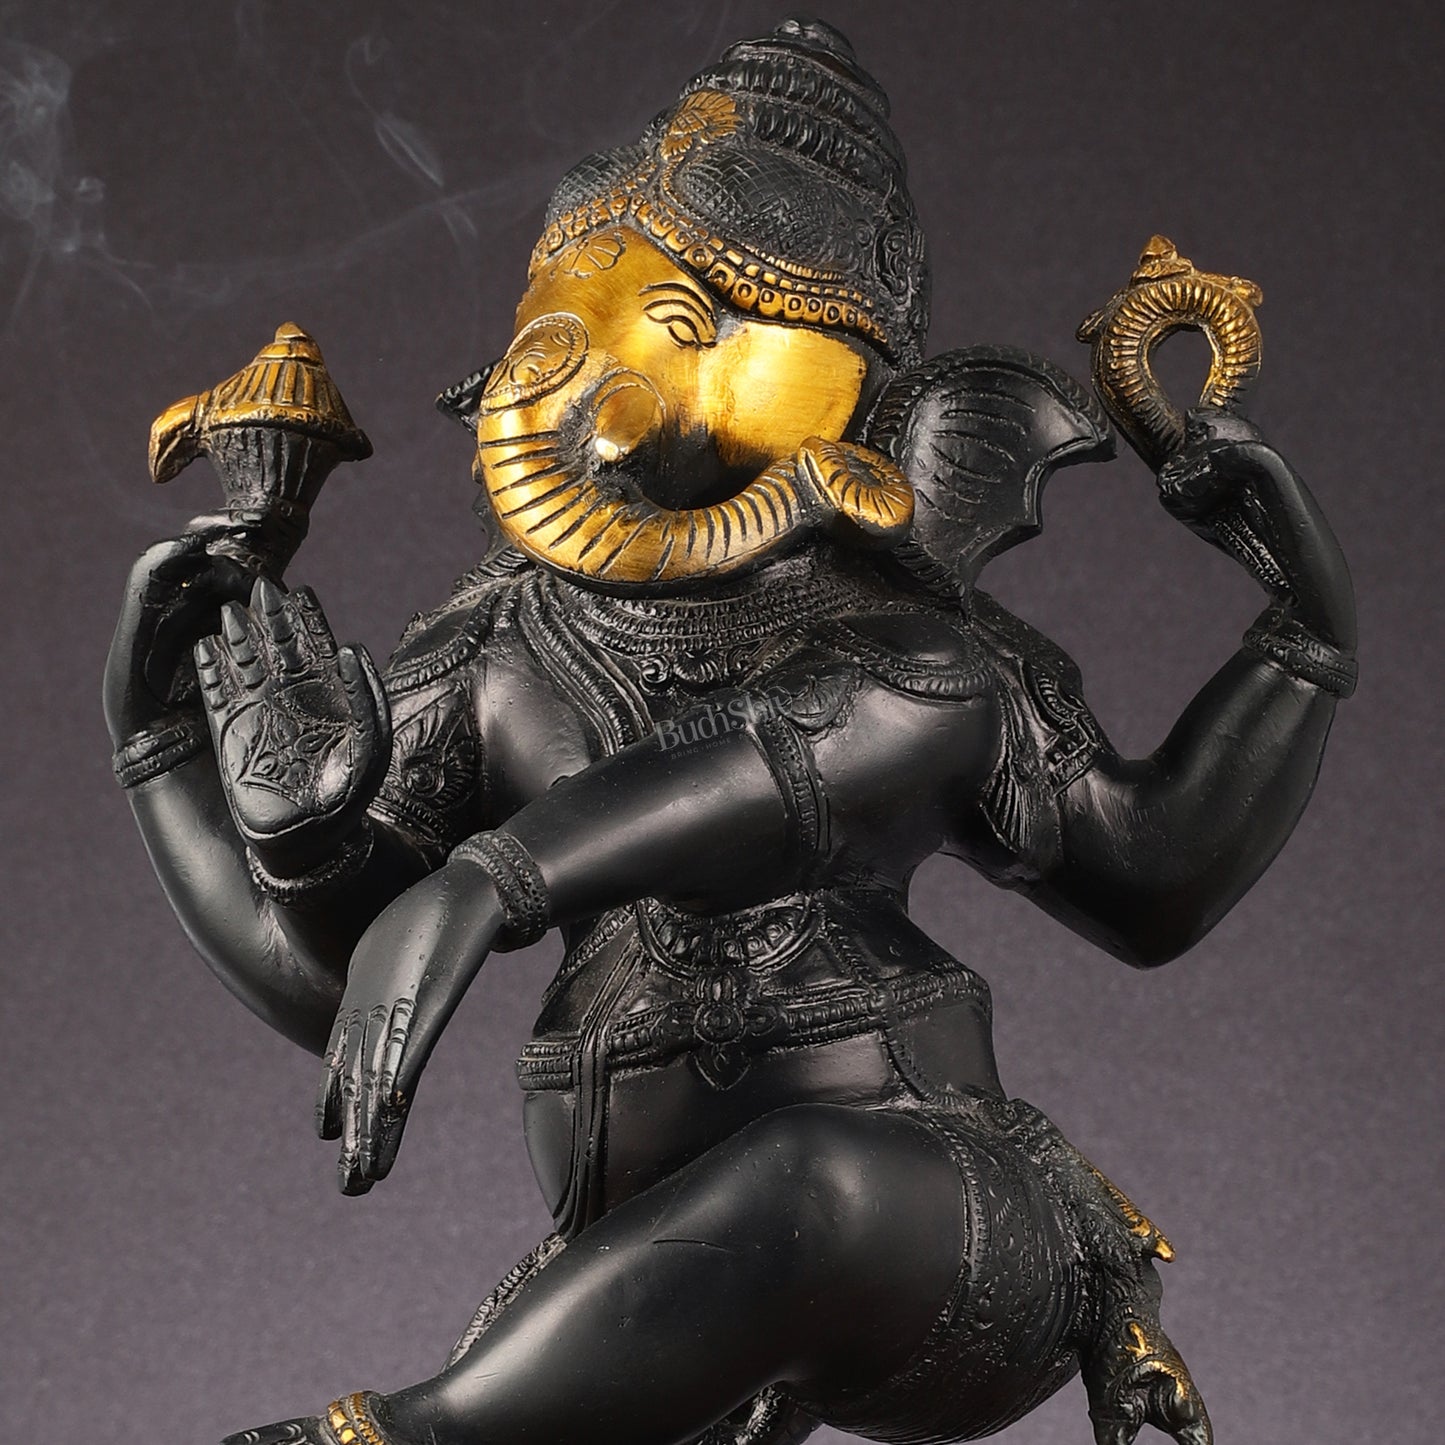 Brass Superfine Dancing Ganesha Statue - 20-Inch